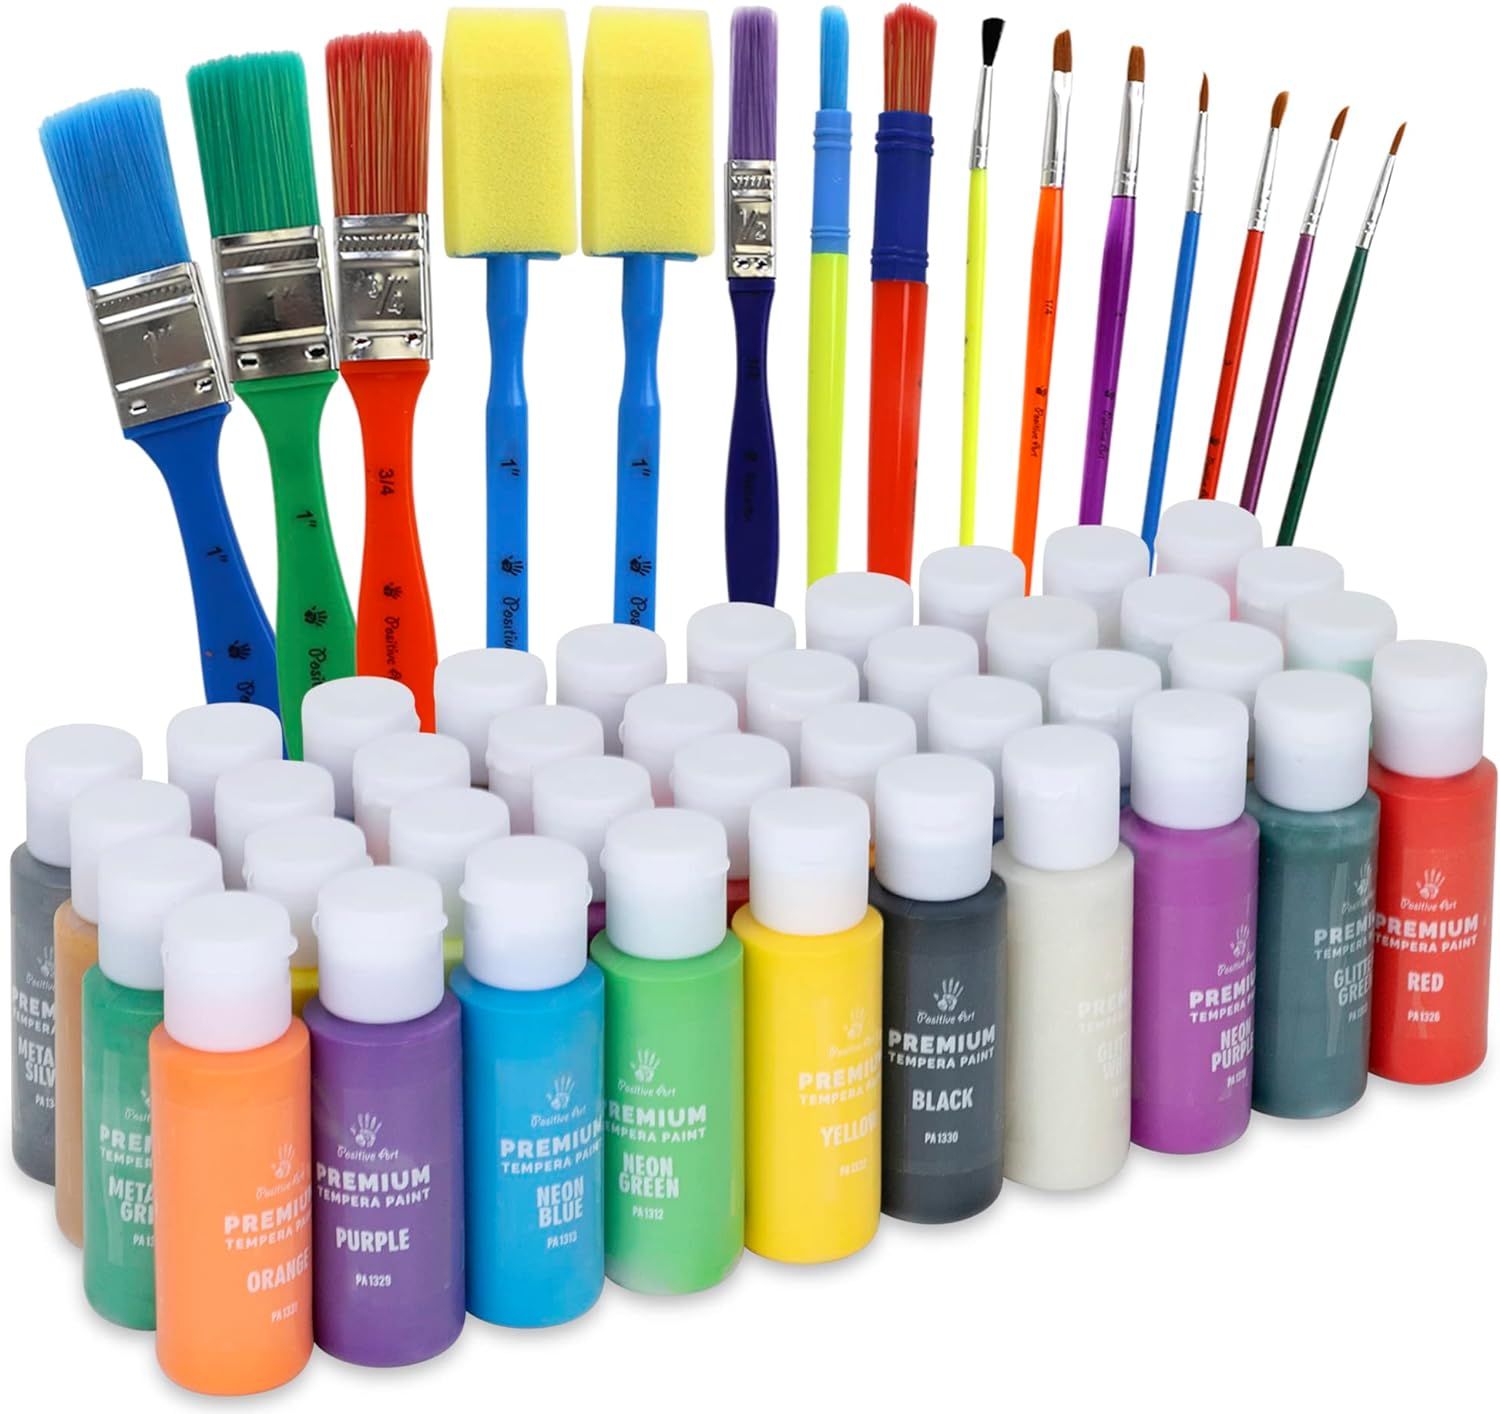 Cra-Z-Art Washable Tempera Paint Bulk Pack 10ct, Assorted Colors 8oz Each Bottle